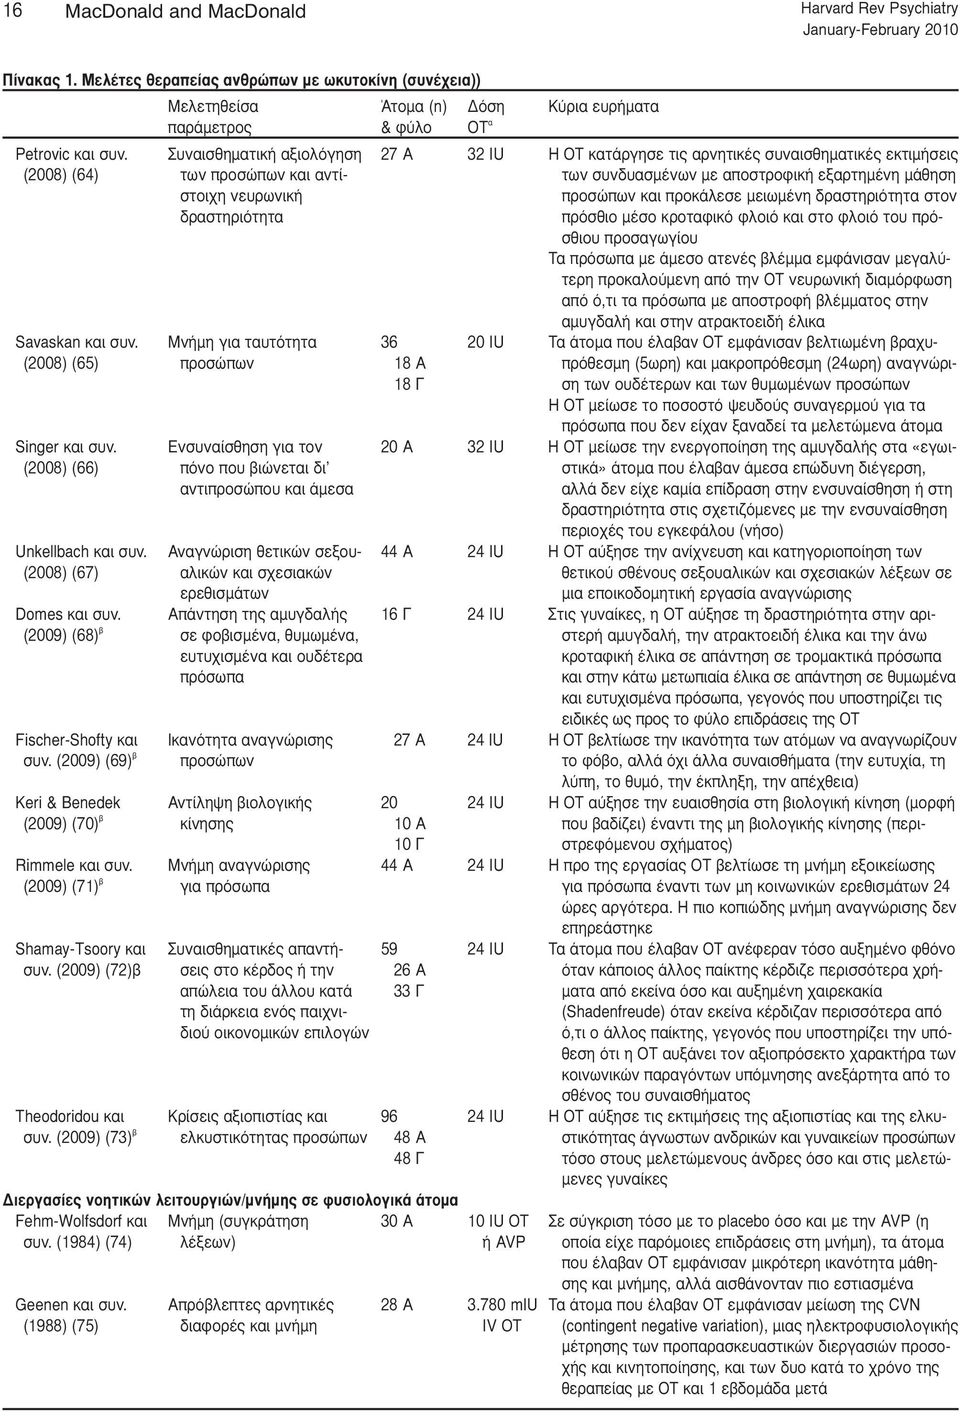 Συναισθηματική αξιολόγηση 27 Α 32 IU Η ΟΤ κατάργησε τις αρνητικές συναισθηματικές εκτιμήσεις (2008) (64) των προσώπων και αντί- των συνδυασμένων με αποστροφική εξαρτημένη μάθηση στοιχη νευρωνική